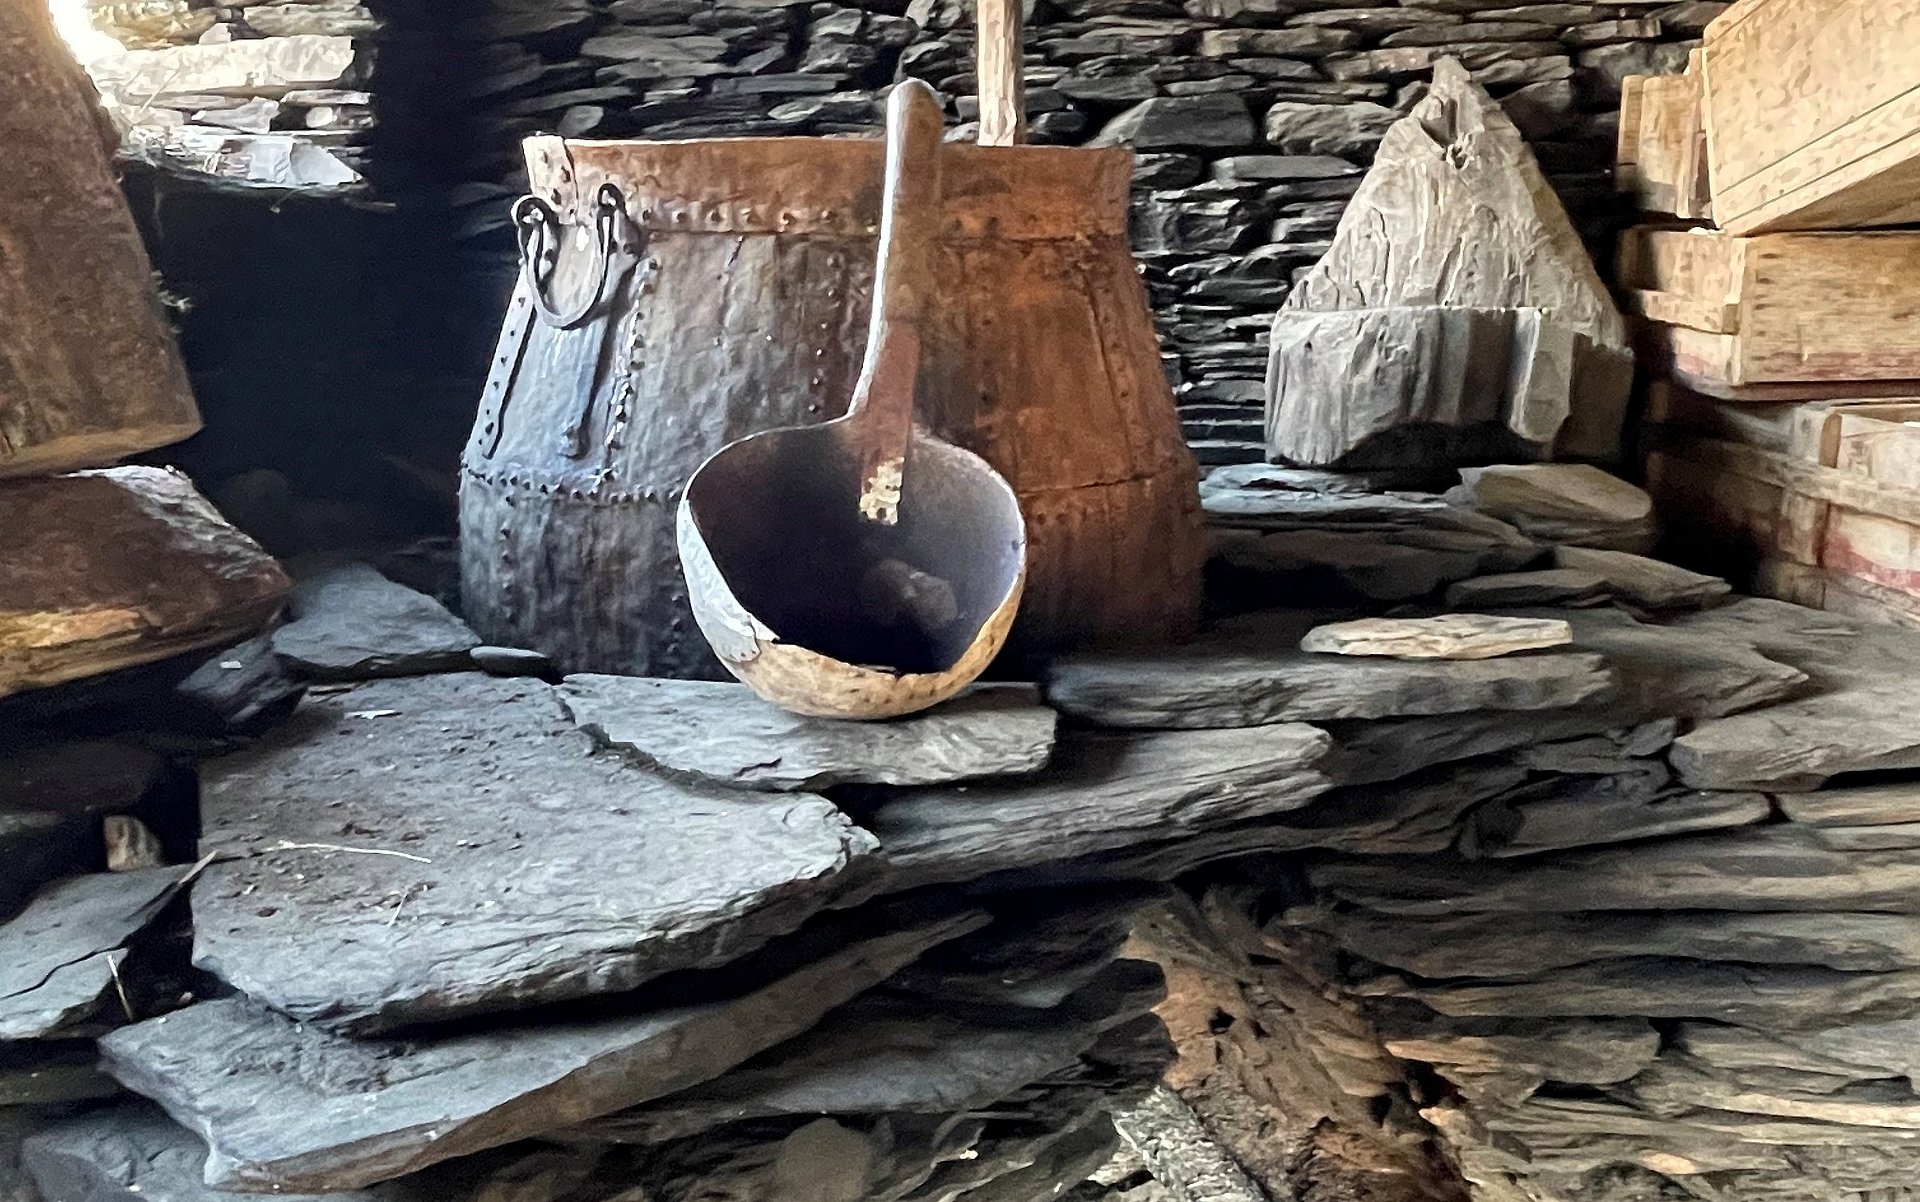 Ein alter Kupferkessel und Brauutensilien aus Holz.